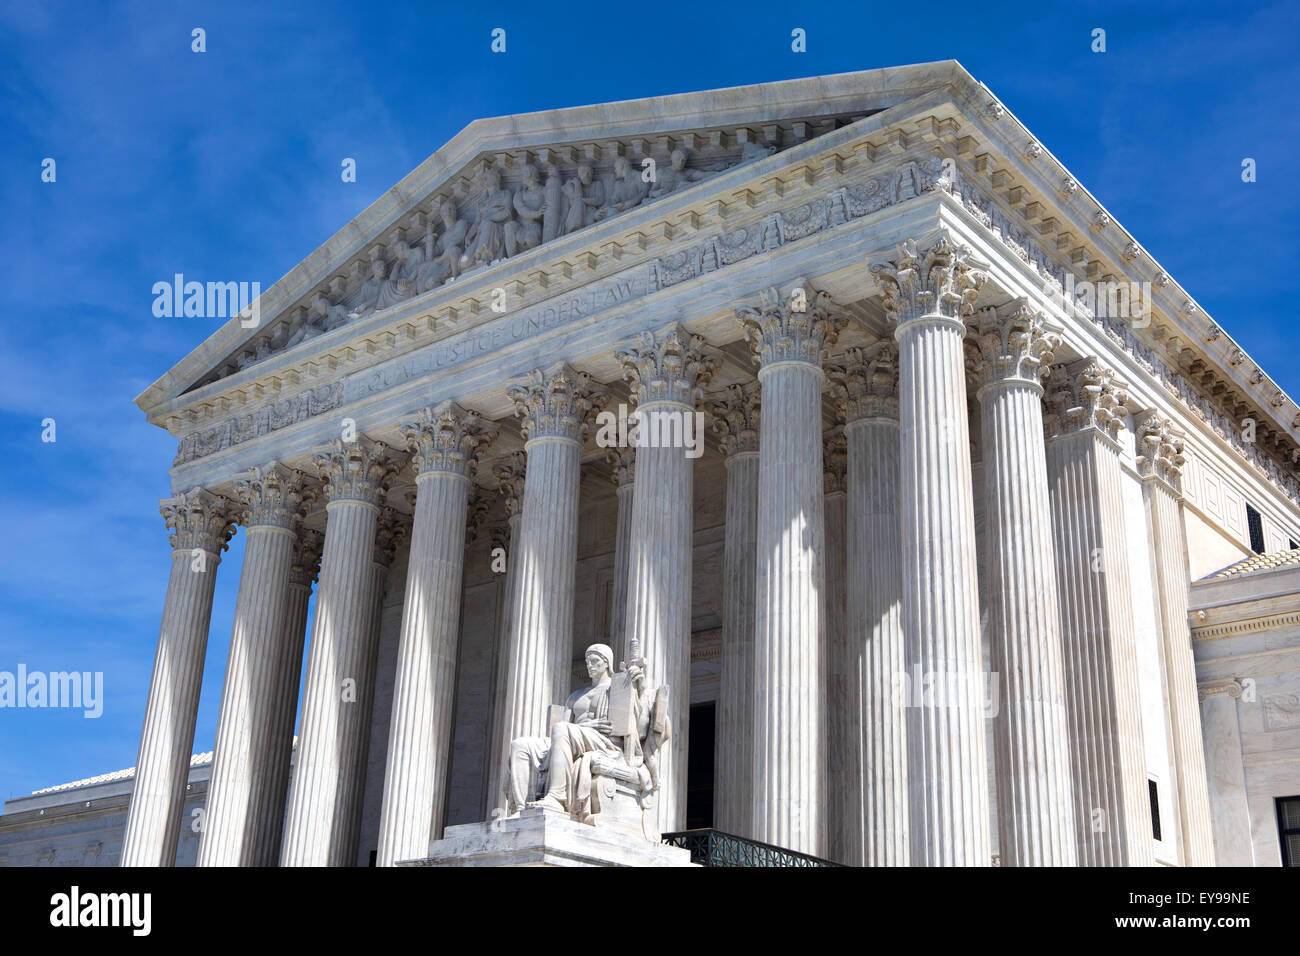 La fachada del edificio de la Corte Suprema de los Estados Unidos en Washington, D.C. Foto de stock